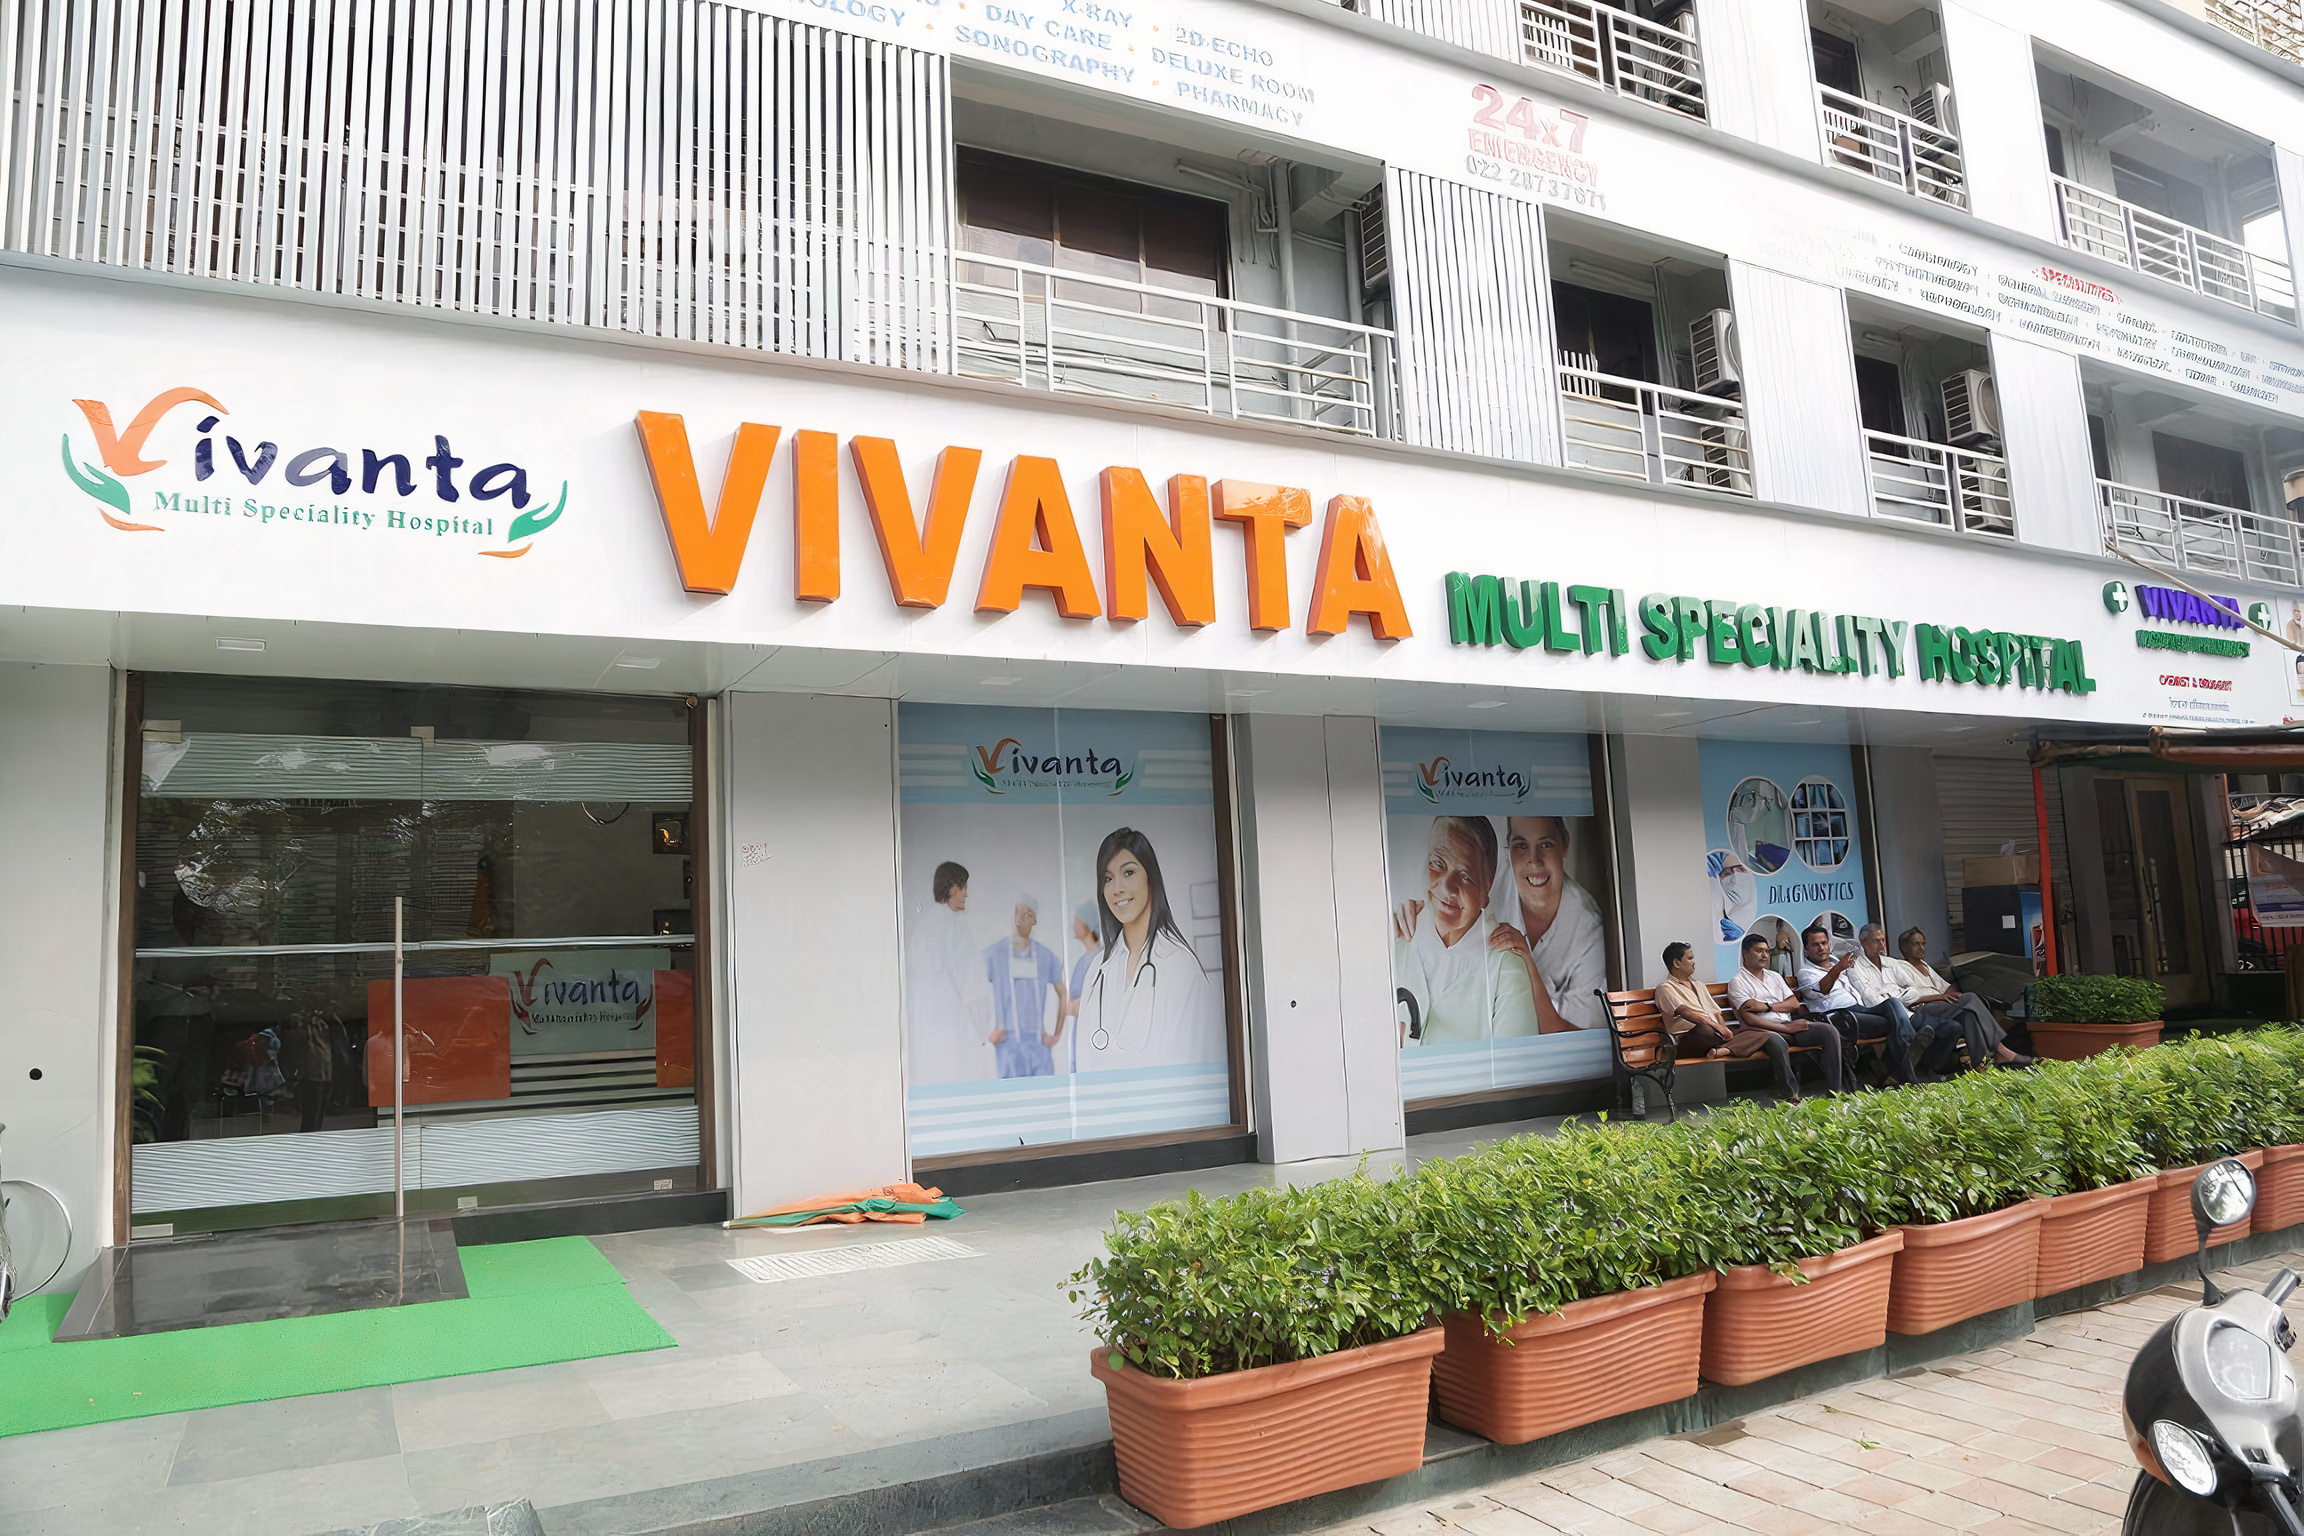 Vivanta Hospital